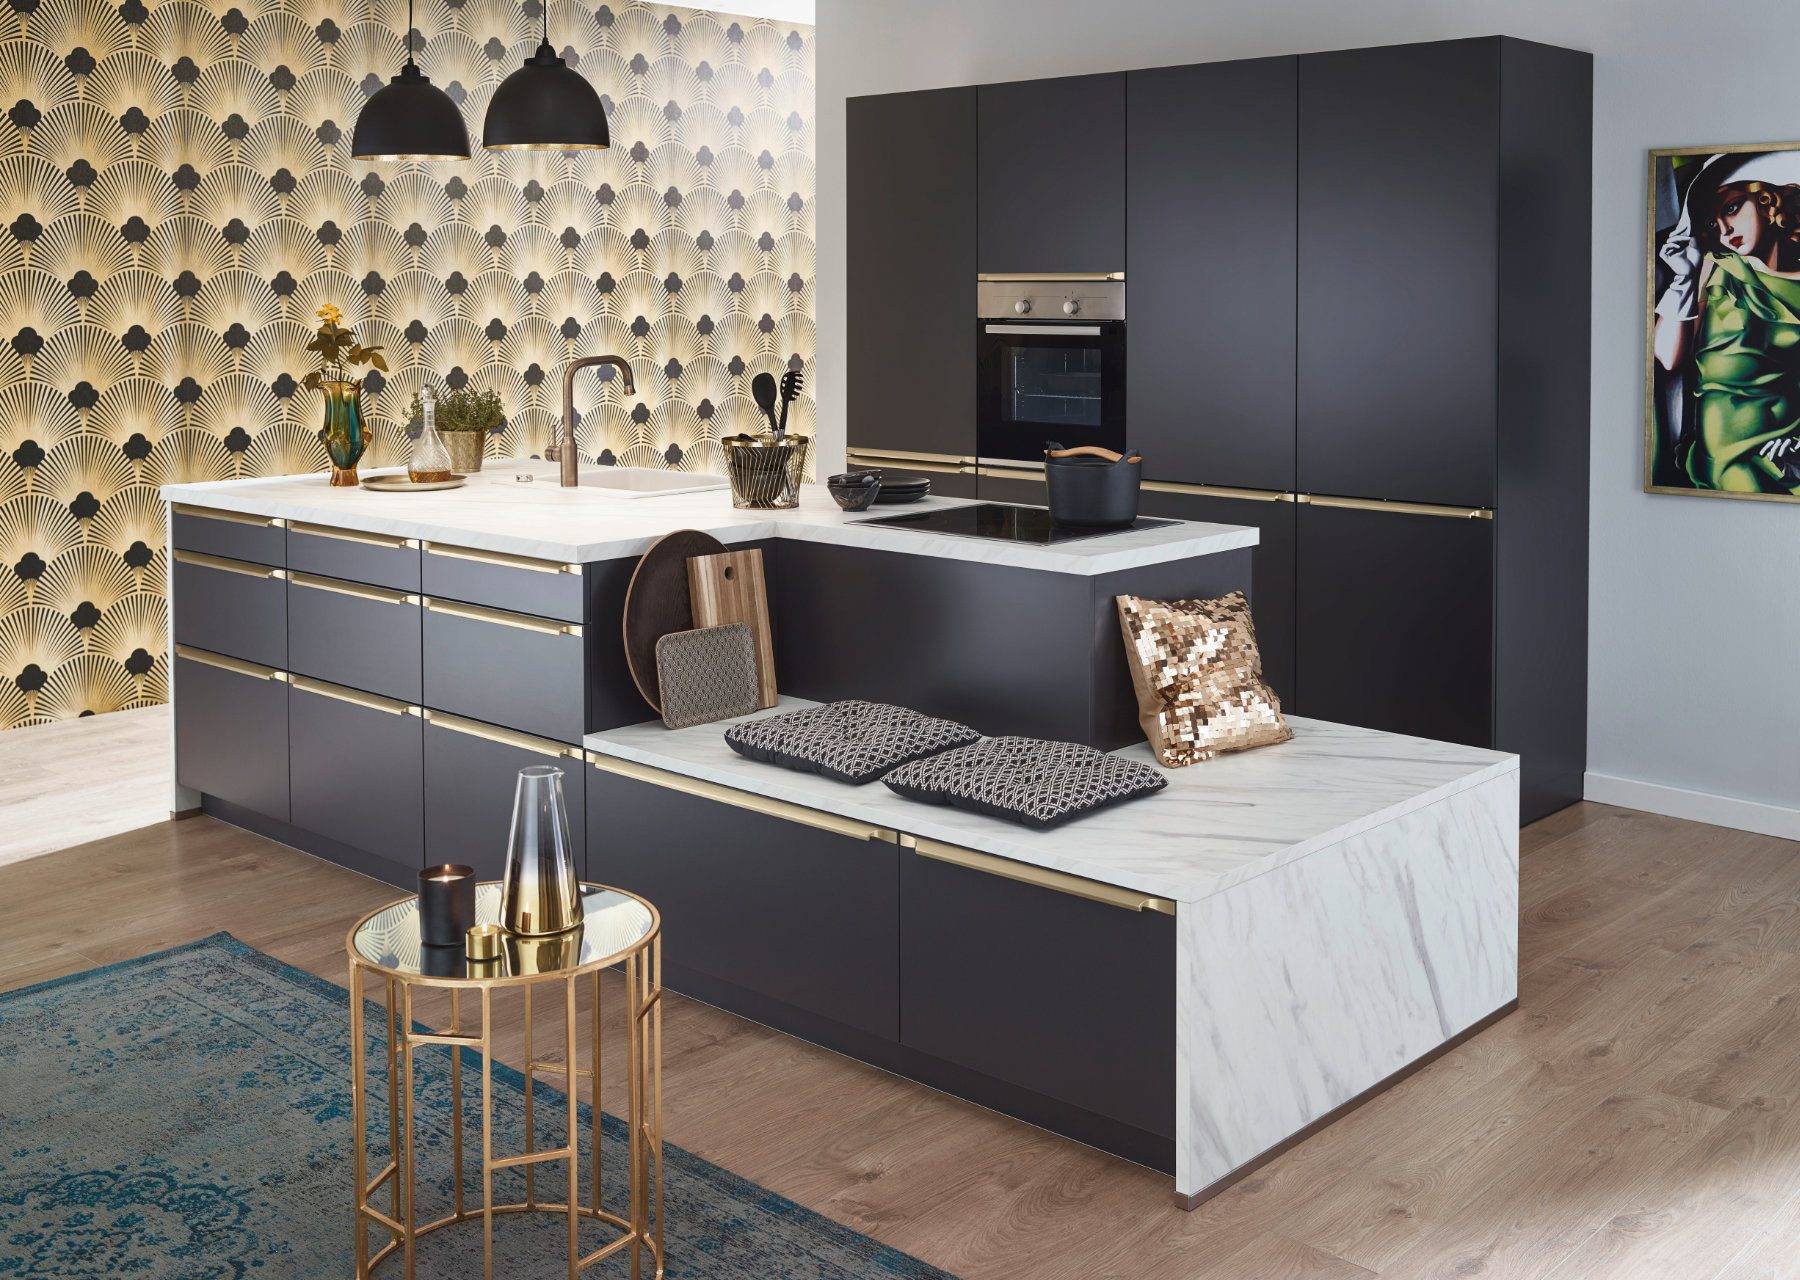 Bauformat Modern Matt Kitchen With Island | Cotswood Kitchens, Blockley